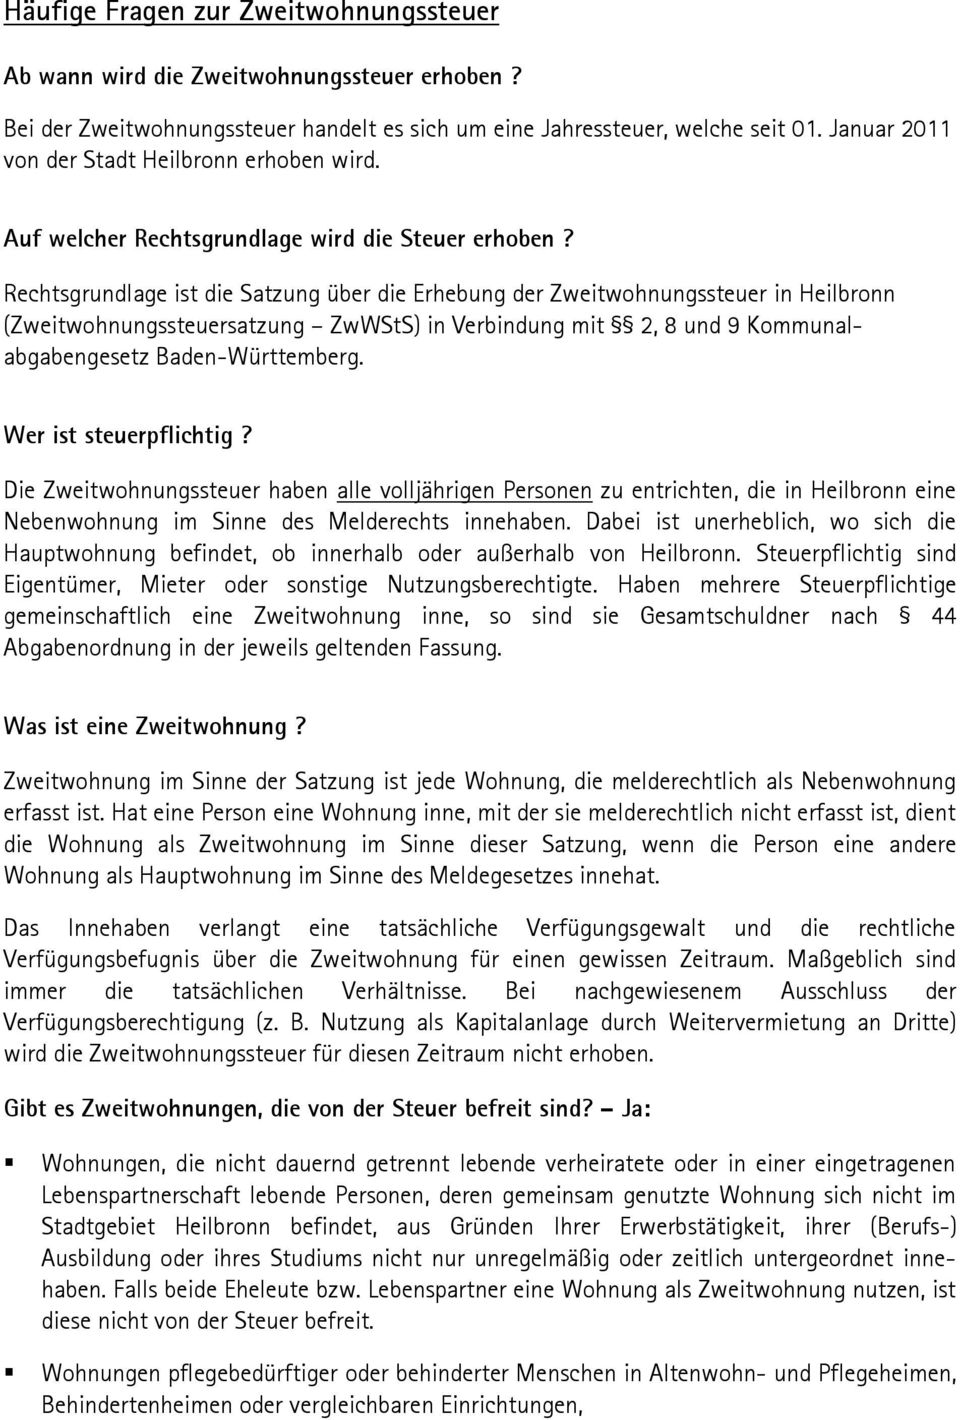 Rechtsgrundlage ist die Satzung über die Erhebung der Zweitwohnungssteuer in Heilbronn (Zweitwohnungssteuersatzung ZwWStS) in Verbindung mit 2, 8 und 9 Kommunalabgabengesetz Baden-Württemberg.